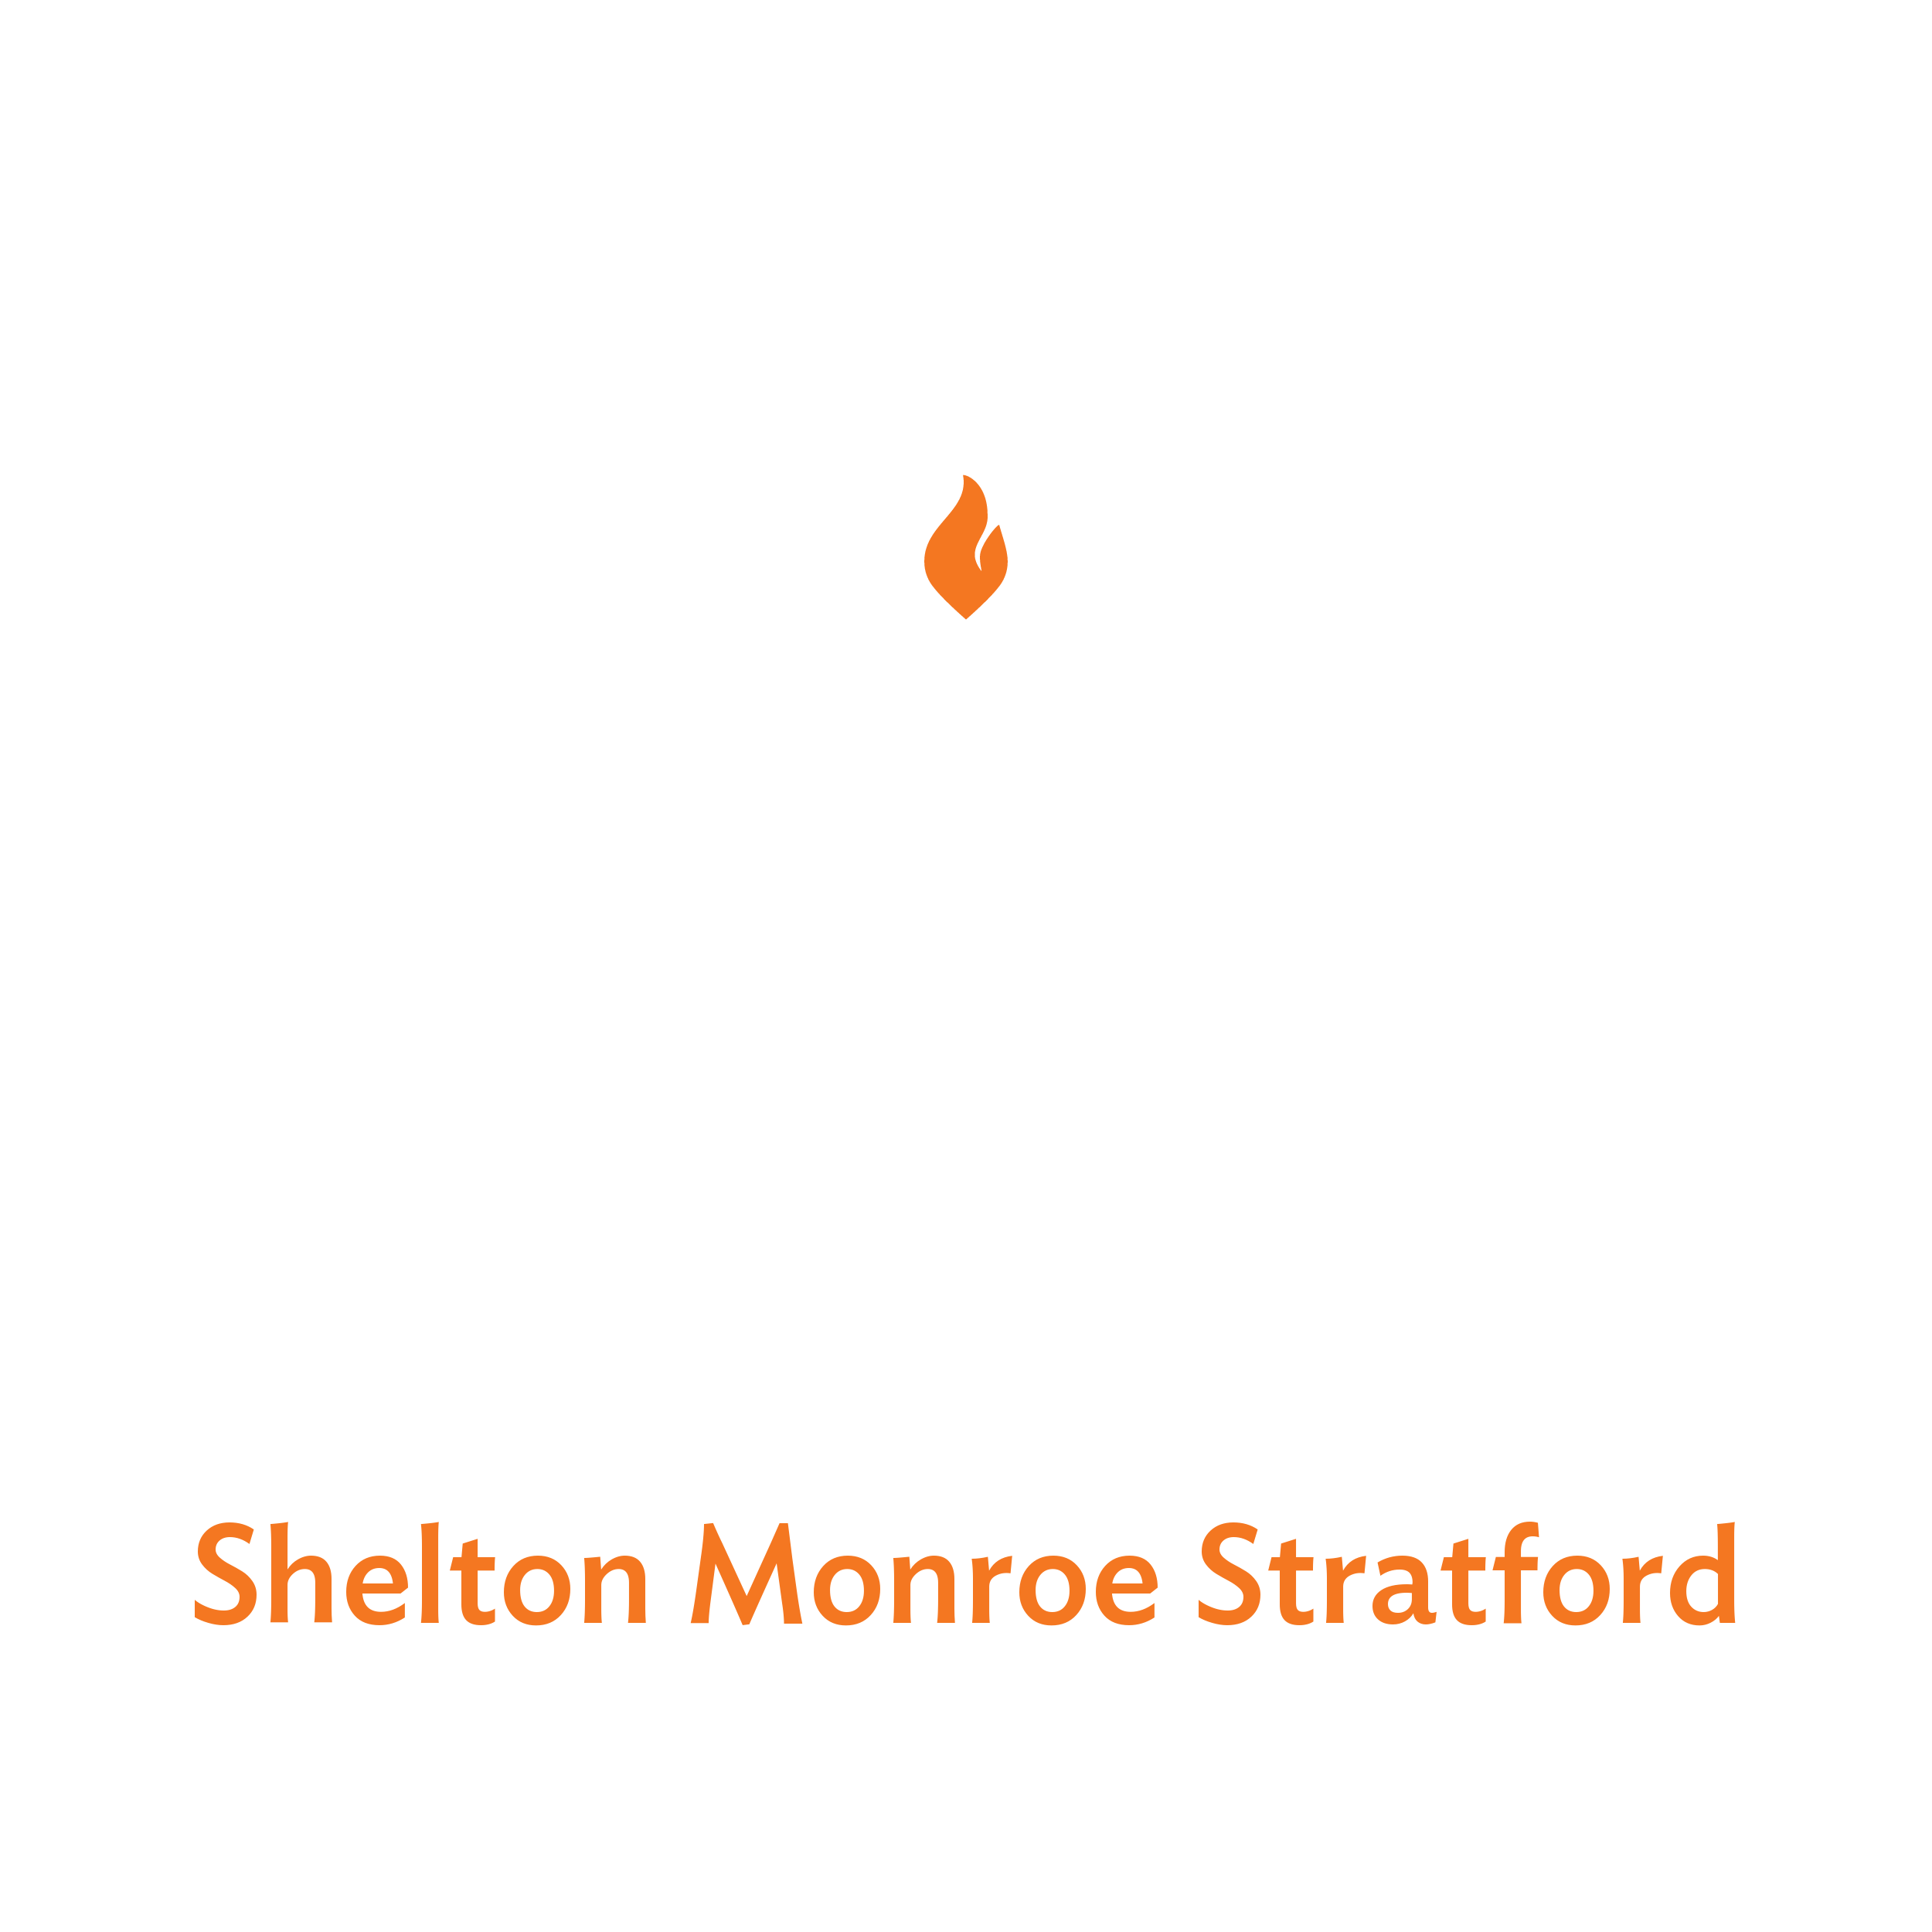 Chabad of Shelton